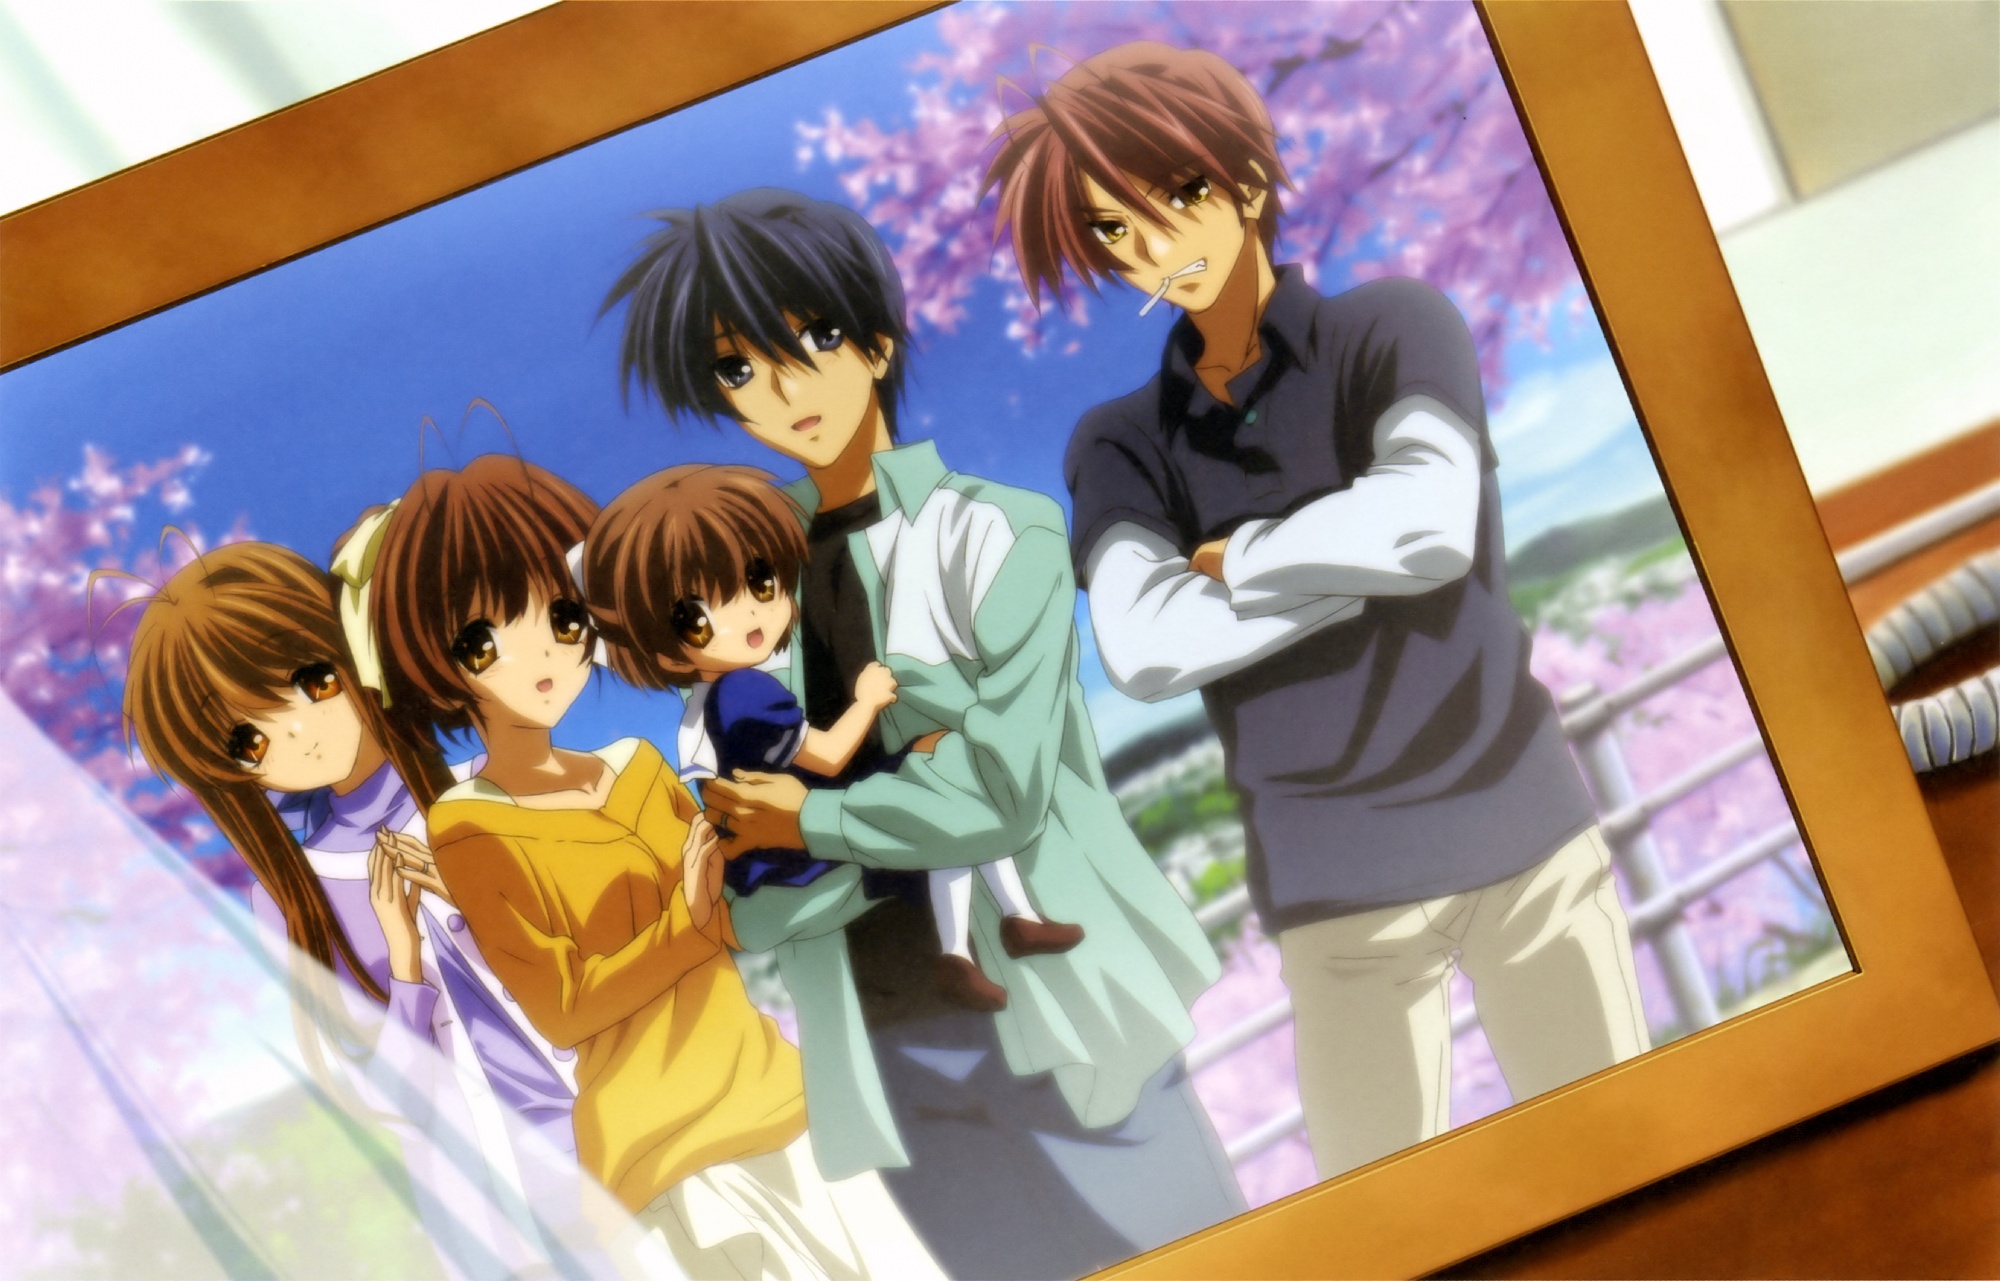 Nagisa, Ushio, Akio, Sanae, and Tomoya Okazaki together in a family portrait